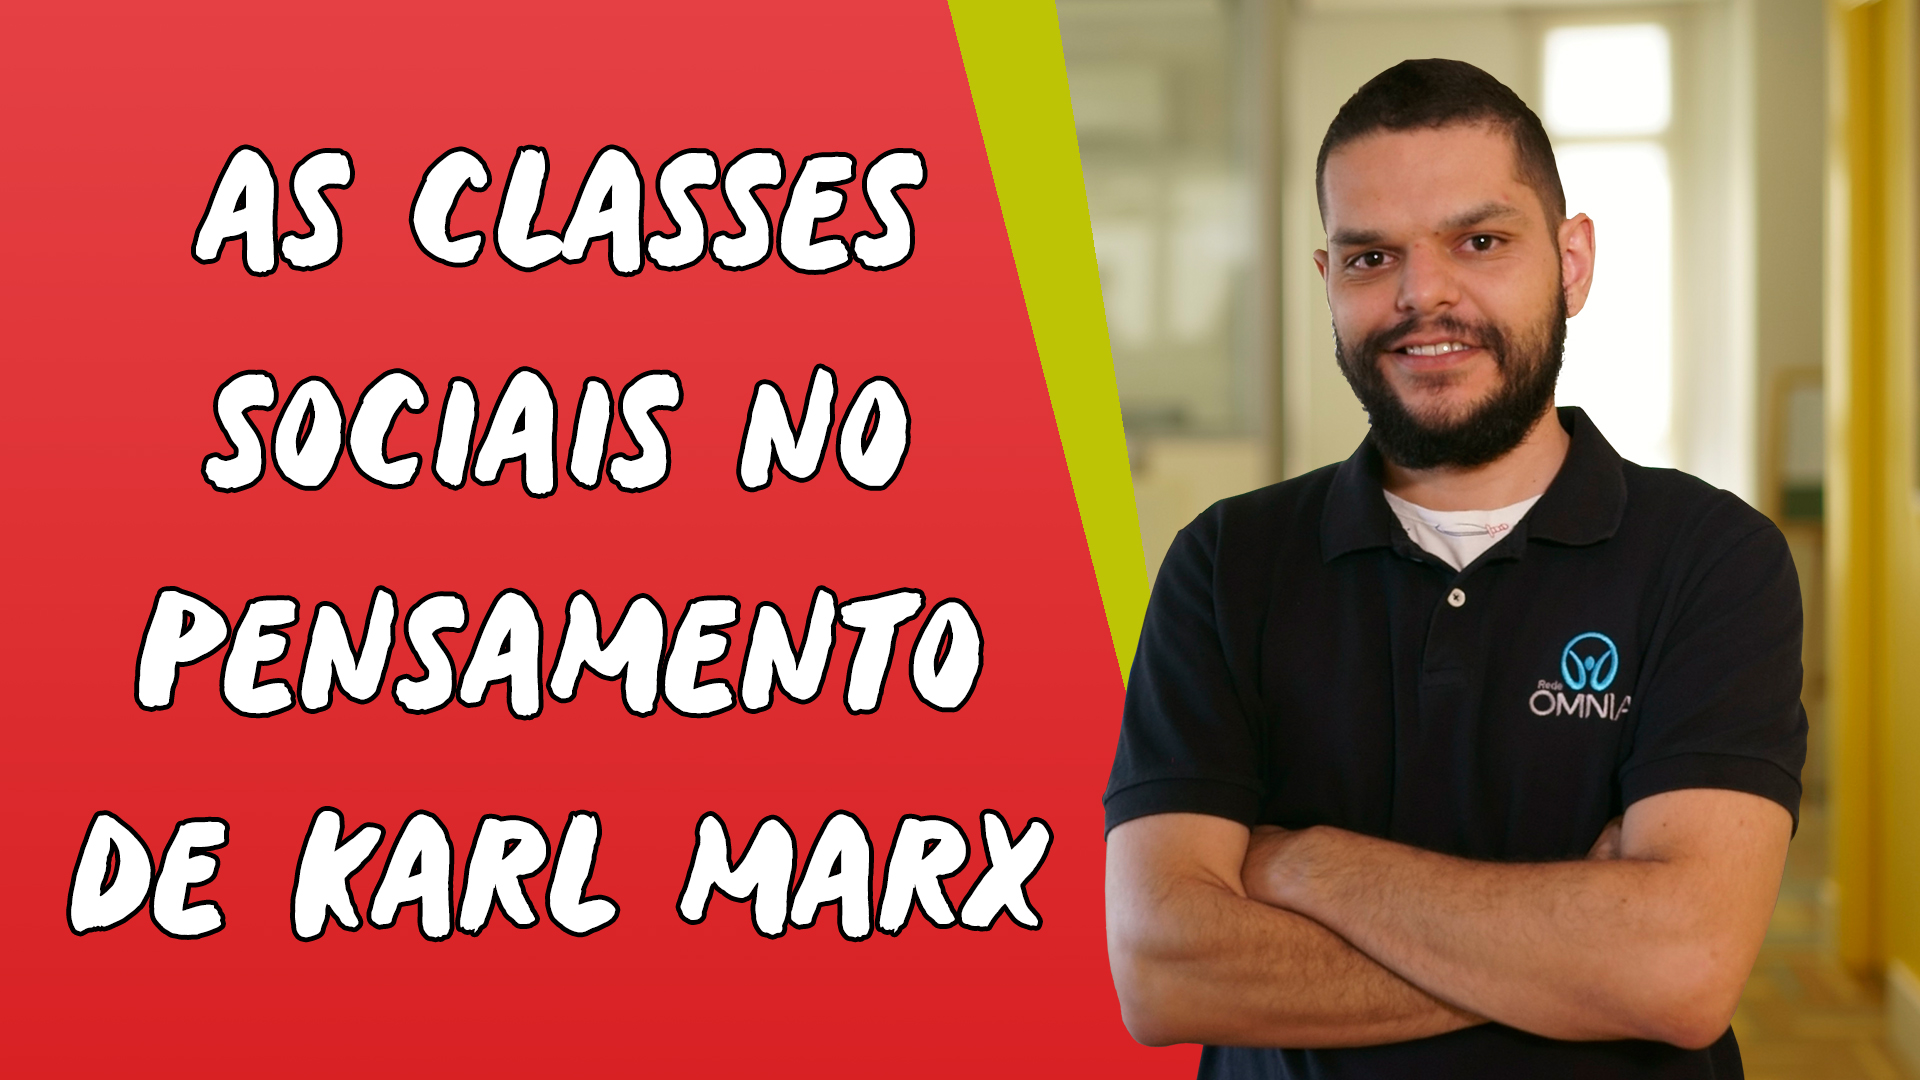 "As Classes Sociais no Pensamento de Karl Marx" escrito sobre fundo vermelho ao lado da imagem do professor